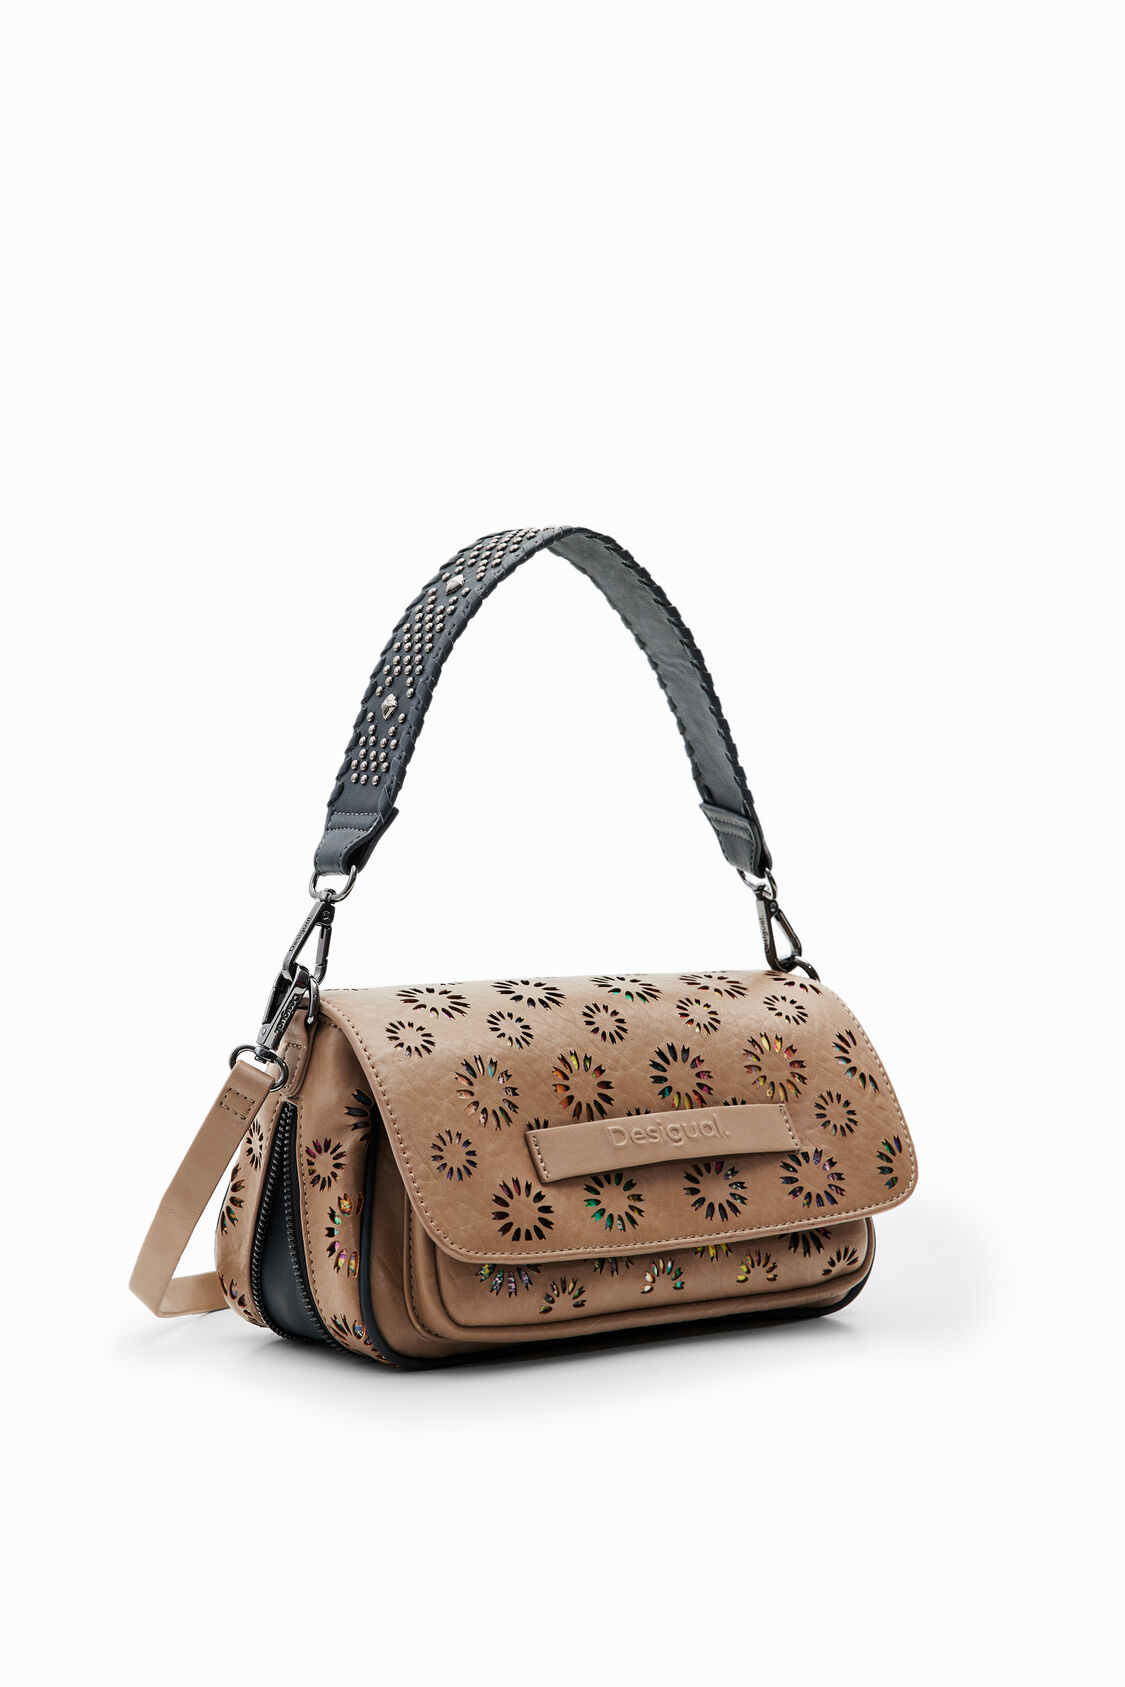 SWAGGER  Louis vuitton handbags, Vuitton handbags, Louis vuitton